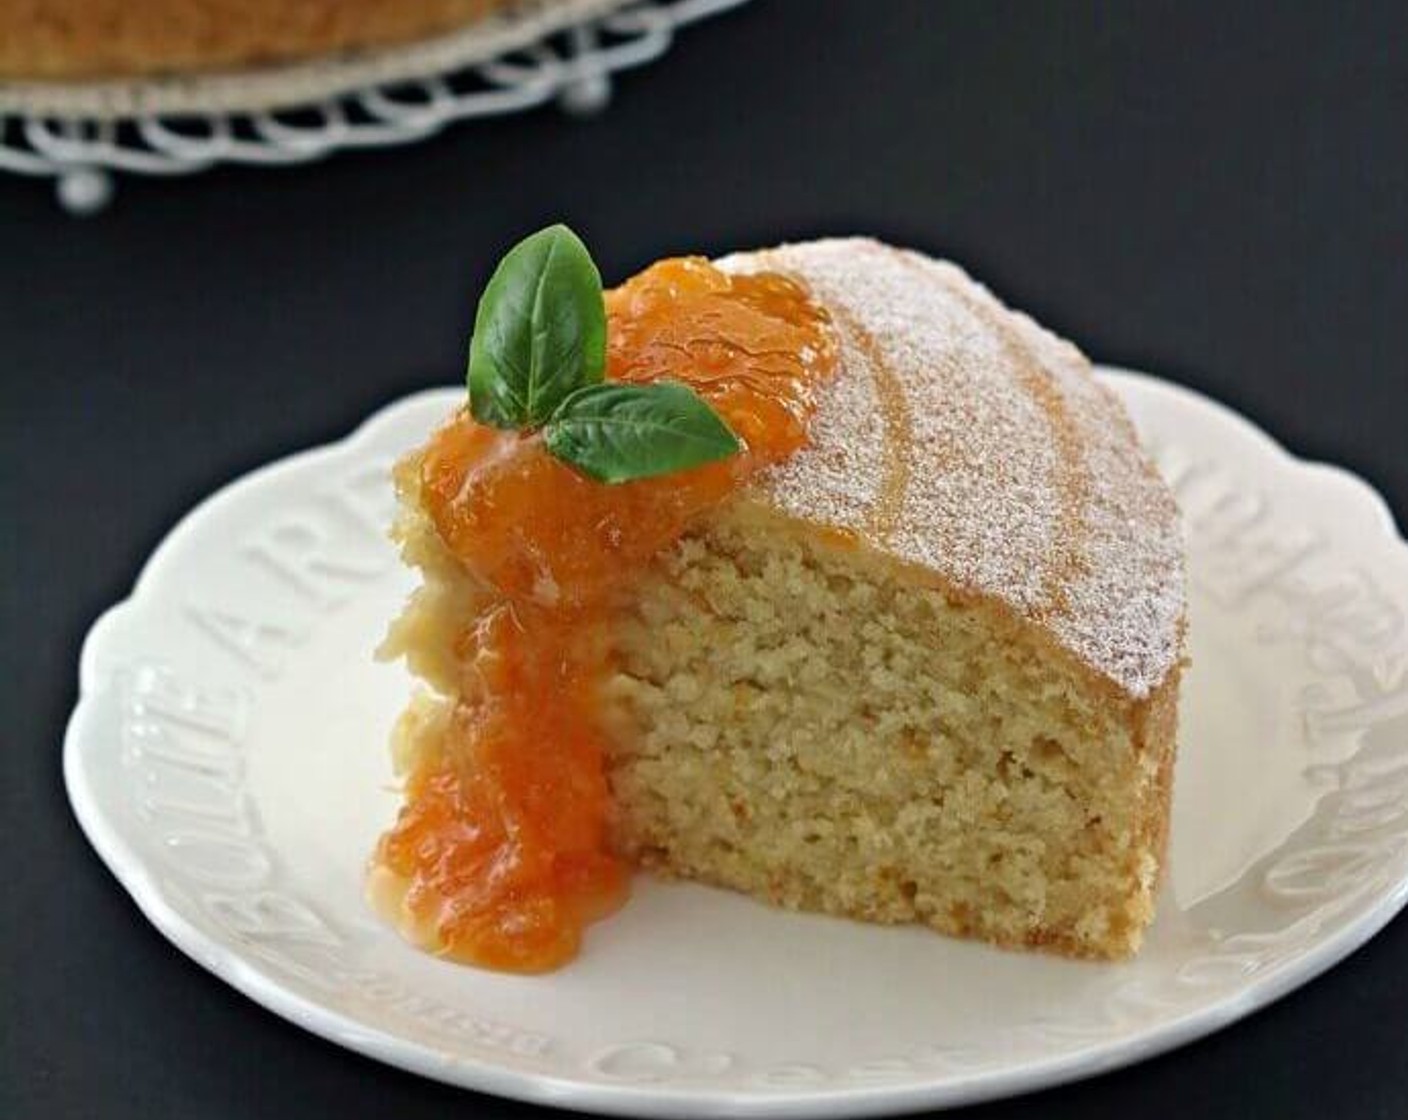 Orange Marmalade Cake